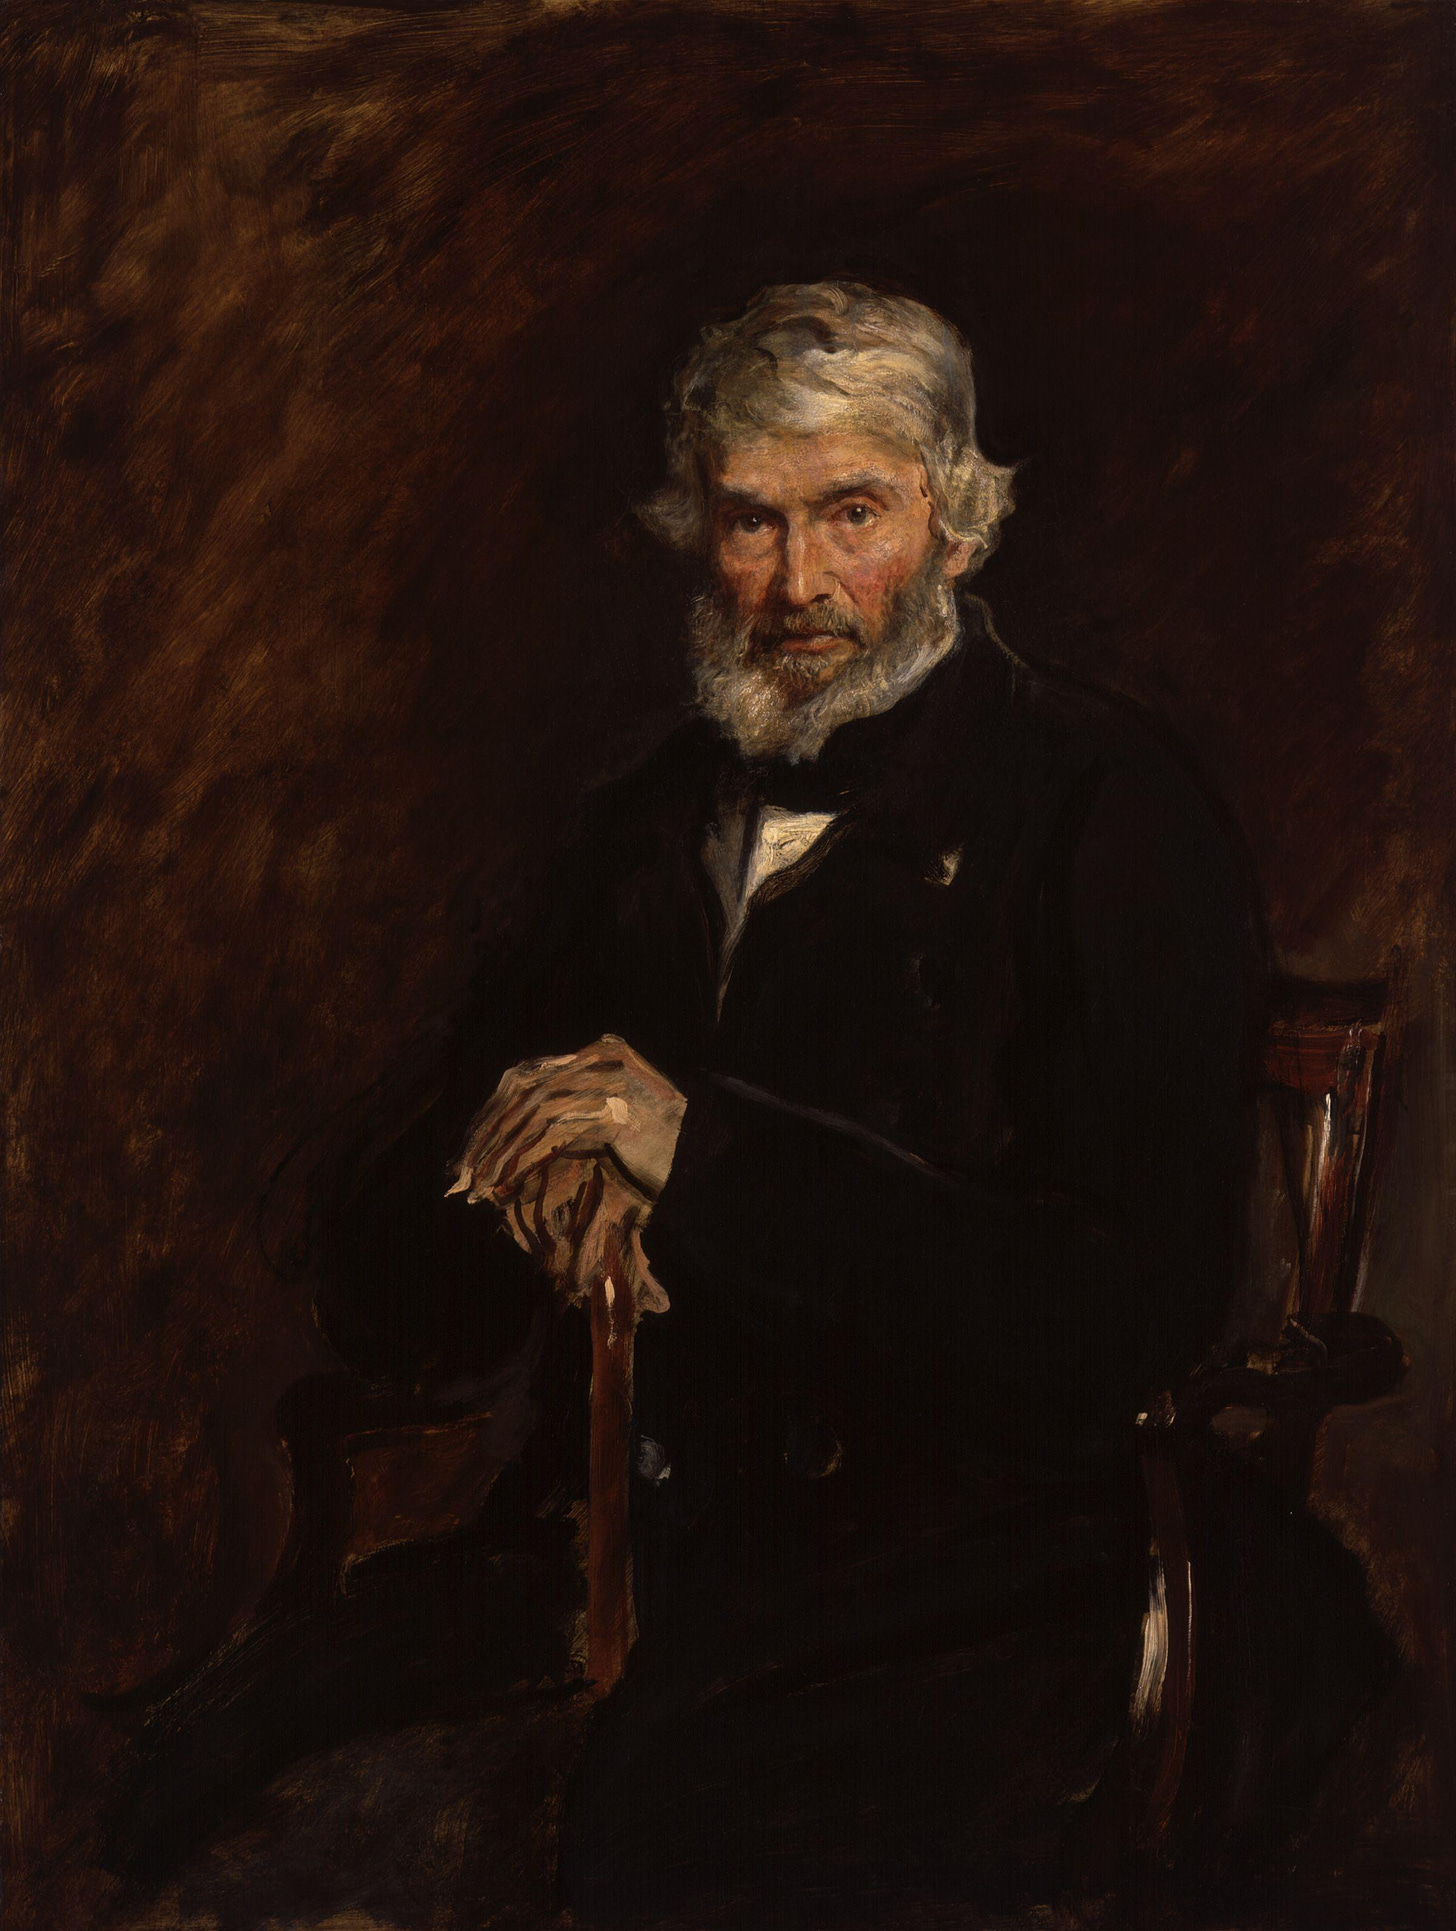 Thomas Carlyle (Millais) - Wikipedia